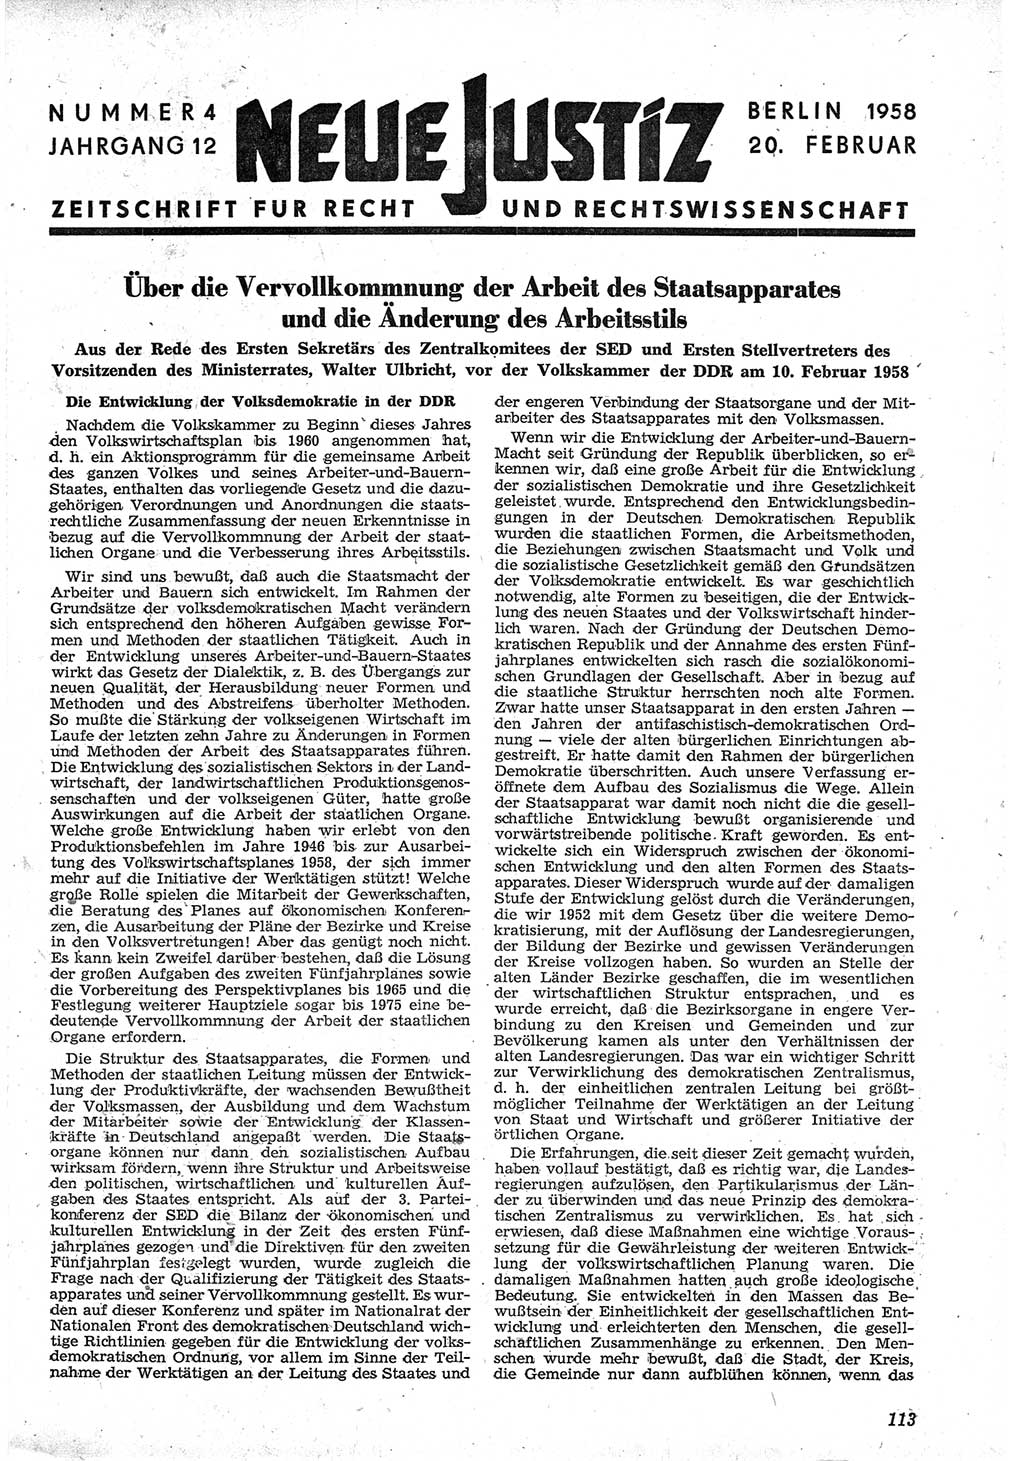 Neue Justiz (NJ), Zeitschrift für Recht und Rechtswissenschaft [Deutsche Demokratische Republik (DDR)], 12. Jahrgang 1958, Seite 113 (NJ DDR 1958, S. 113)